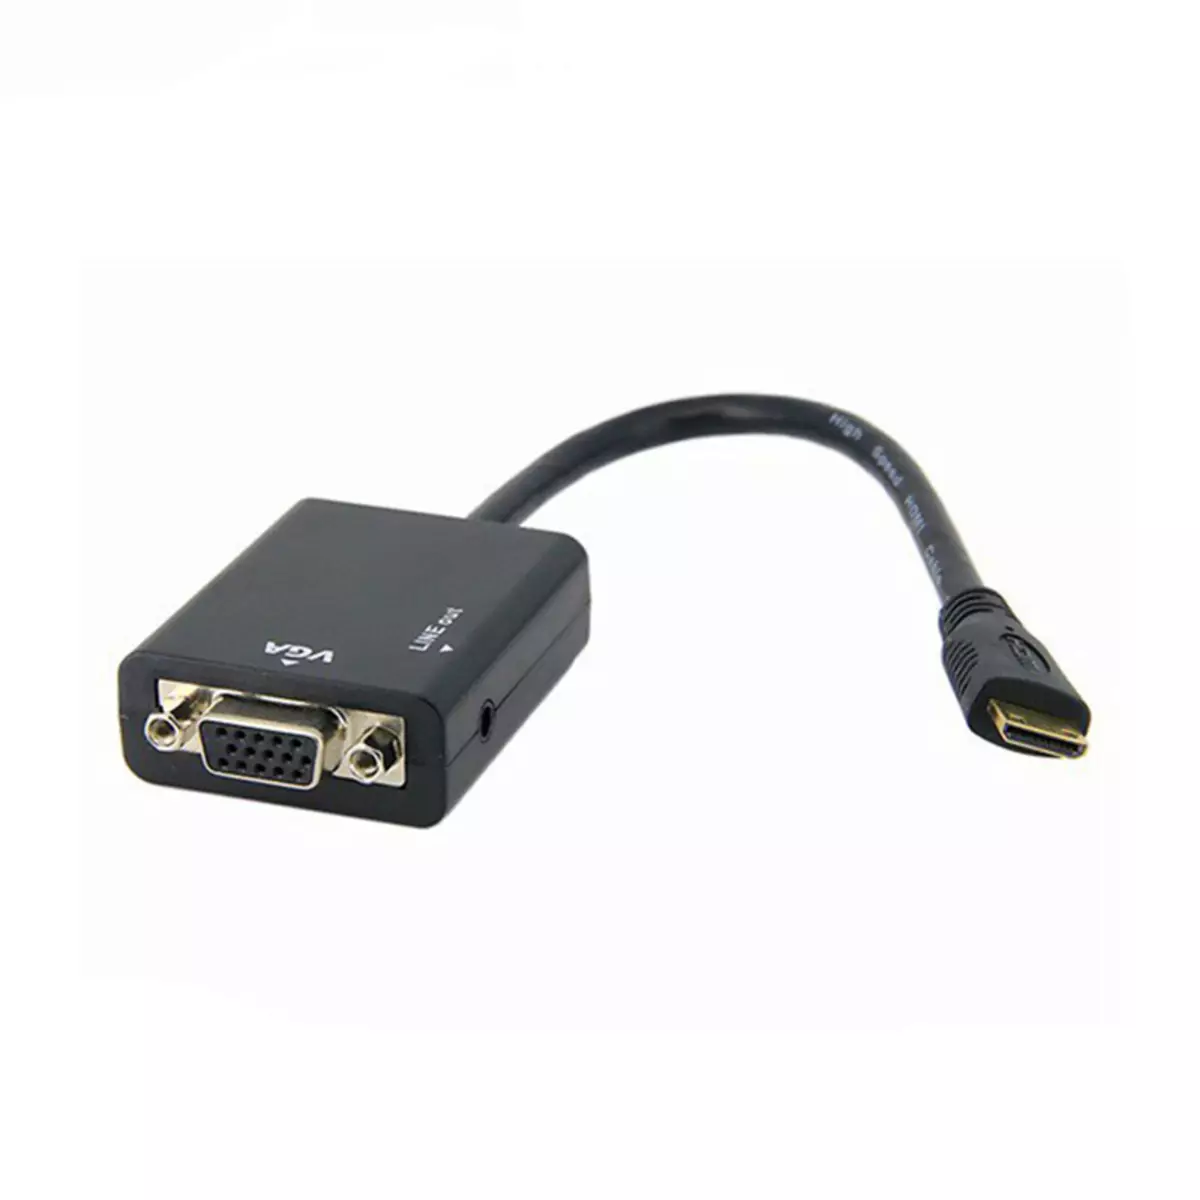 HDMI-VGA adapter